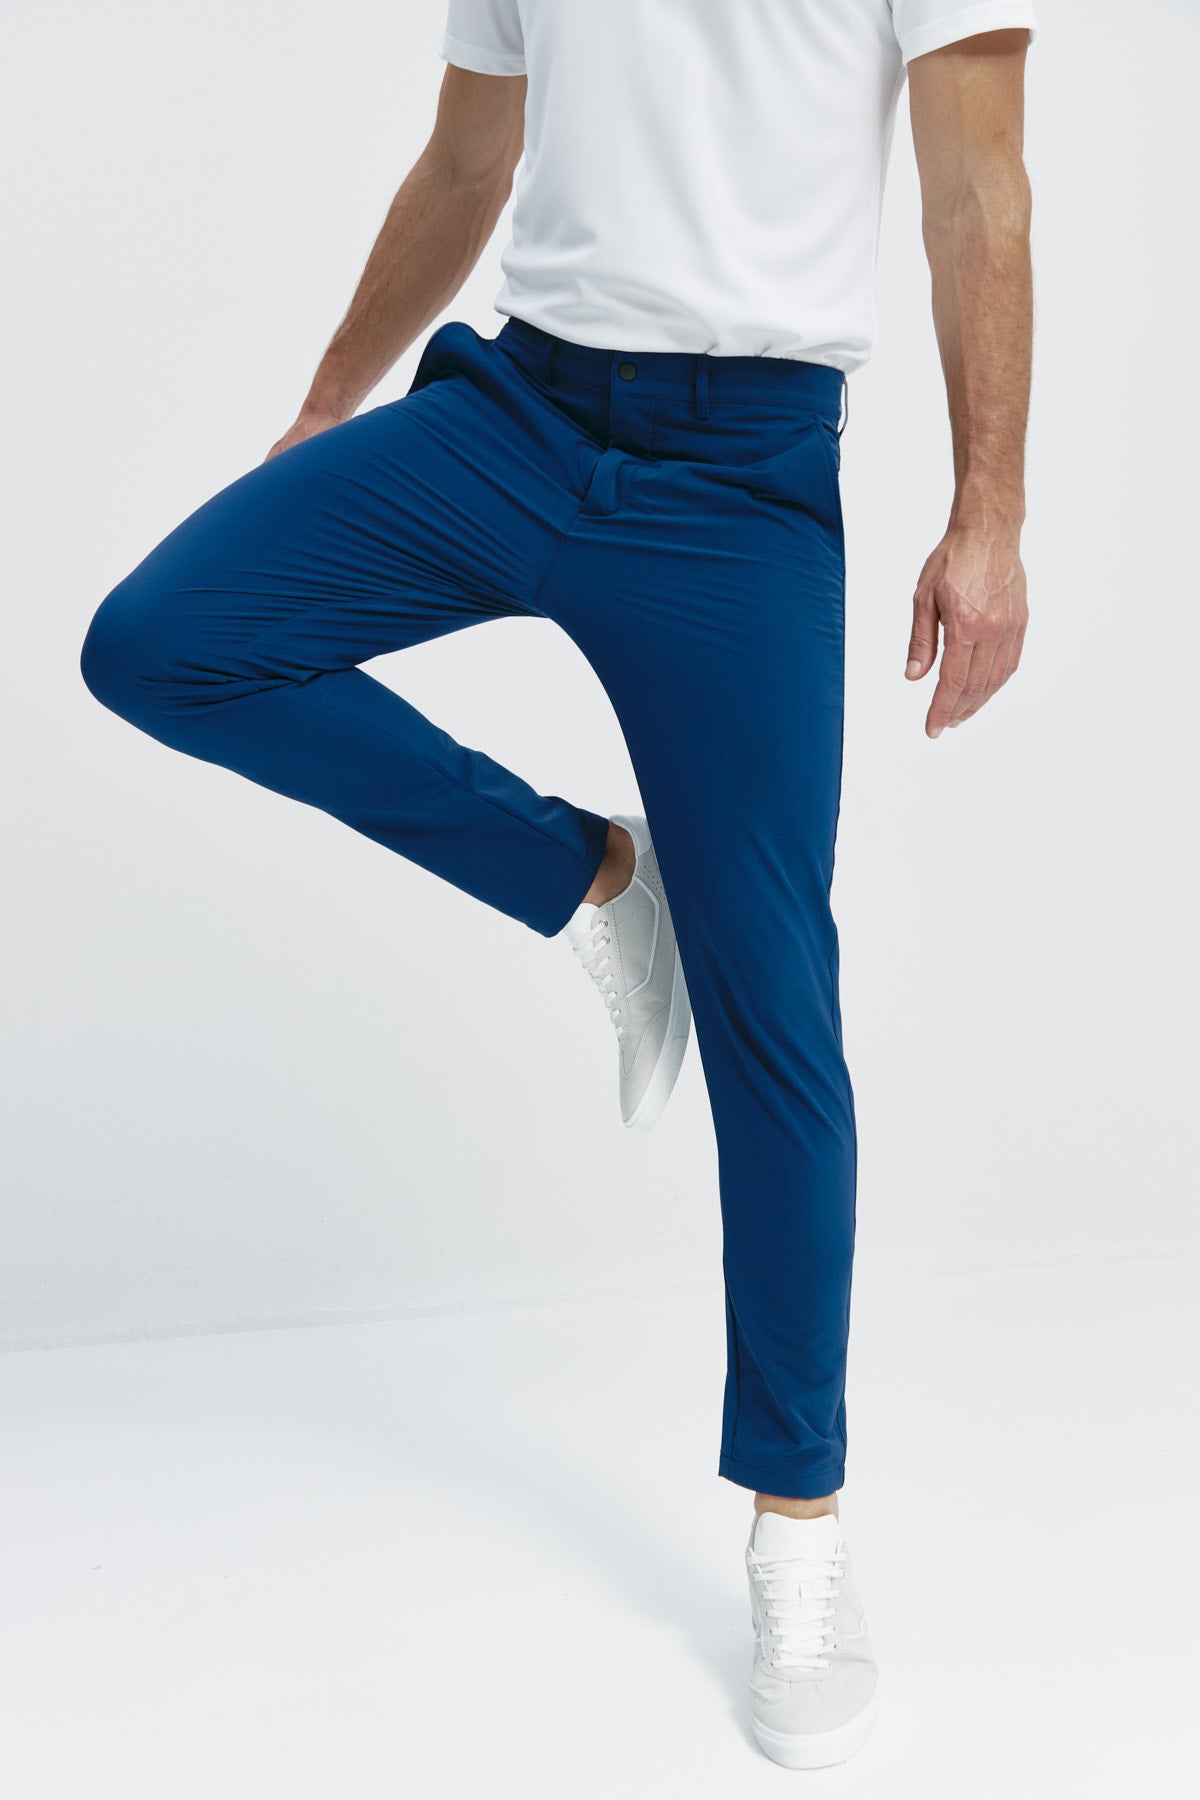 Pantalón para hombre azul marino: Pantalón chino slim azul marino para hombre con tecnología termorreguladora Coolmax. Foto flexibilidad.